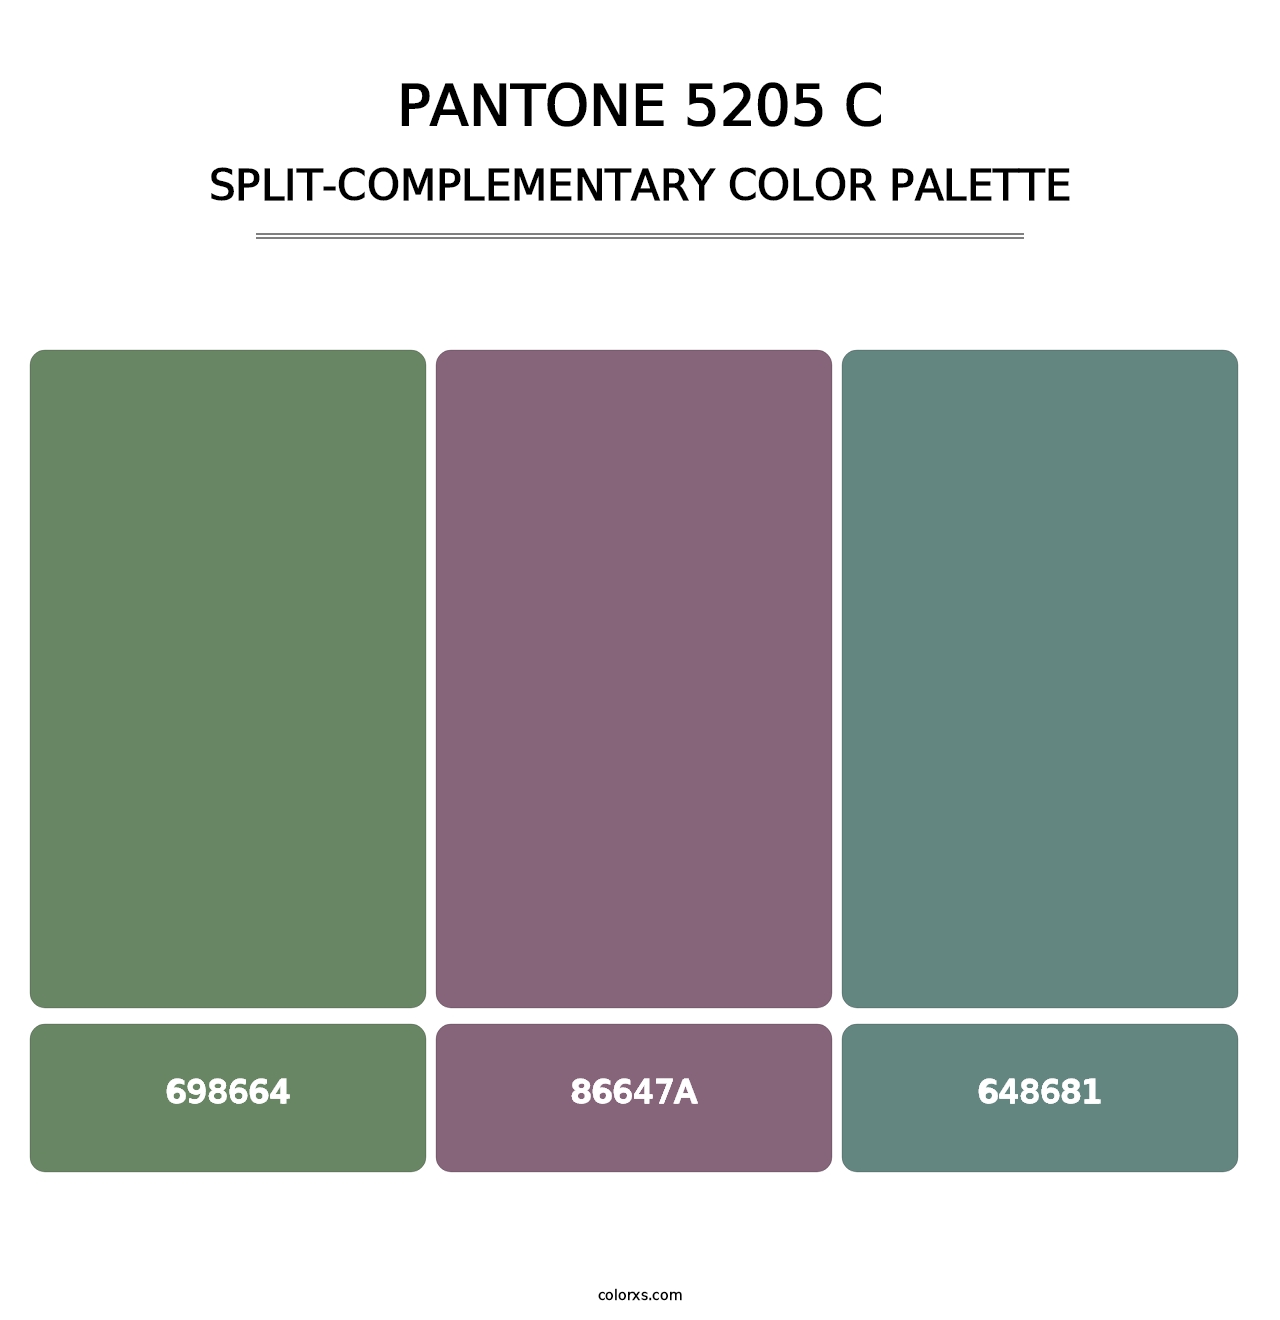 PANTONE 5205 C - Split-Complementary Color Palette